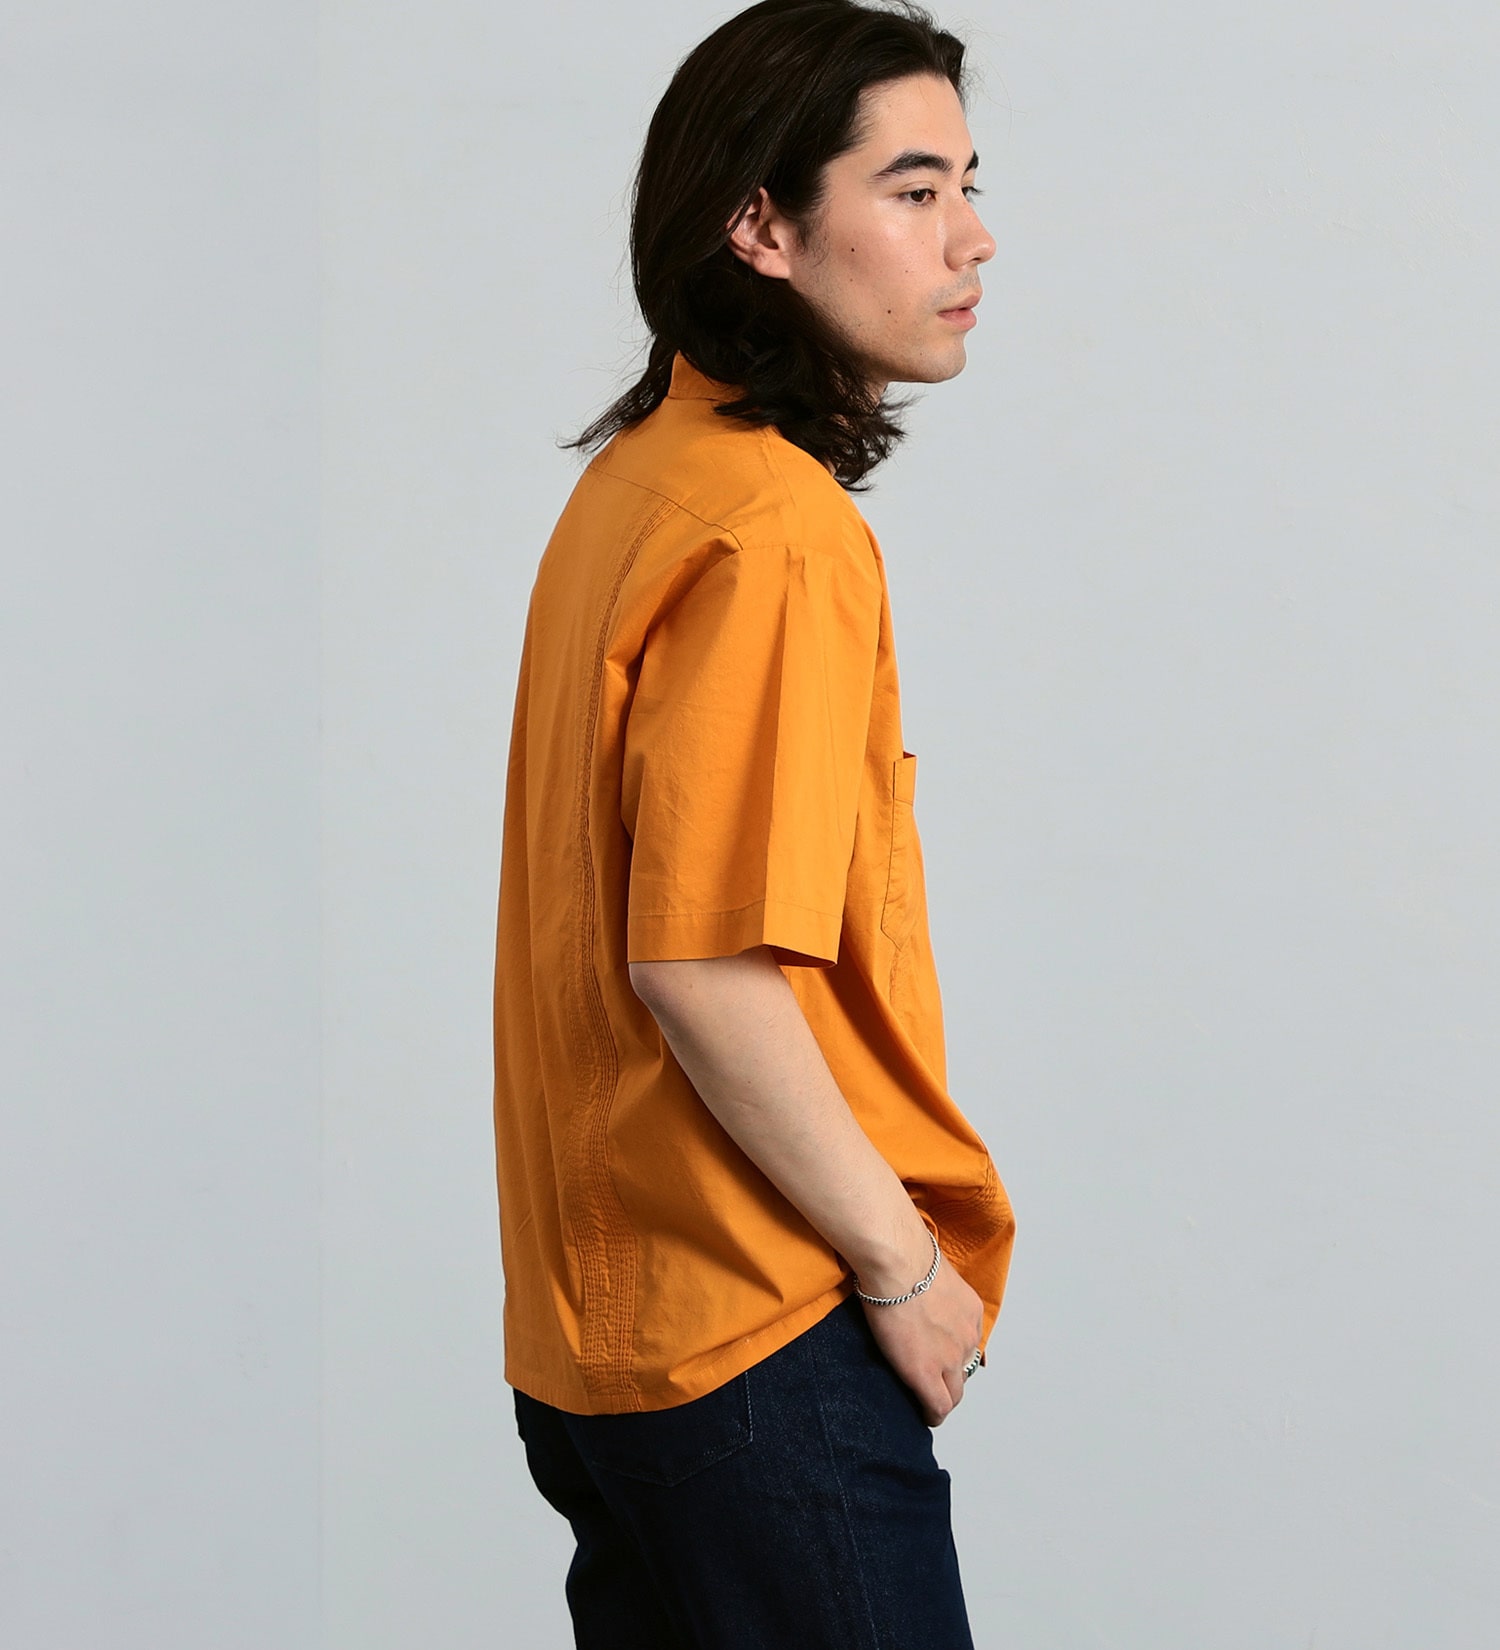 Wrangler(ラングラー)の【ブロード素材】キューバシャツ|トップス/シャツ/ブラウス/メンズ|オレンジ